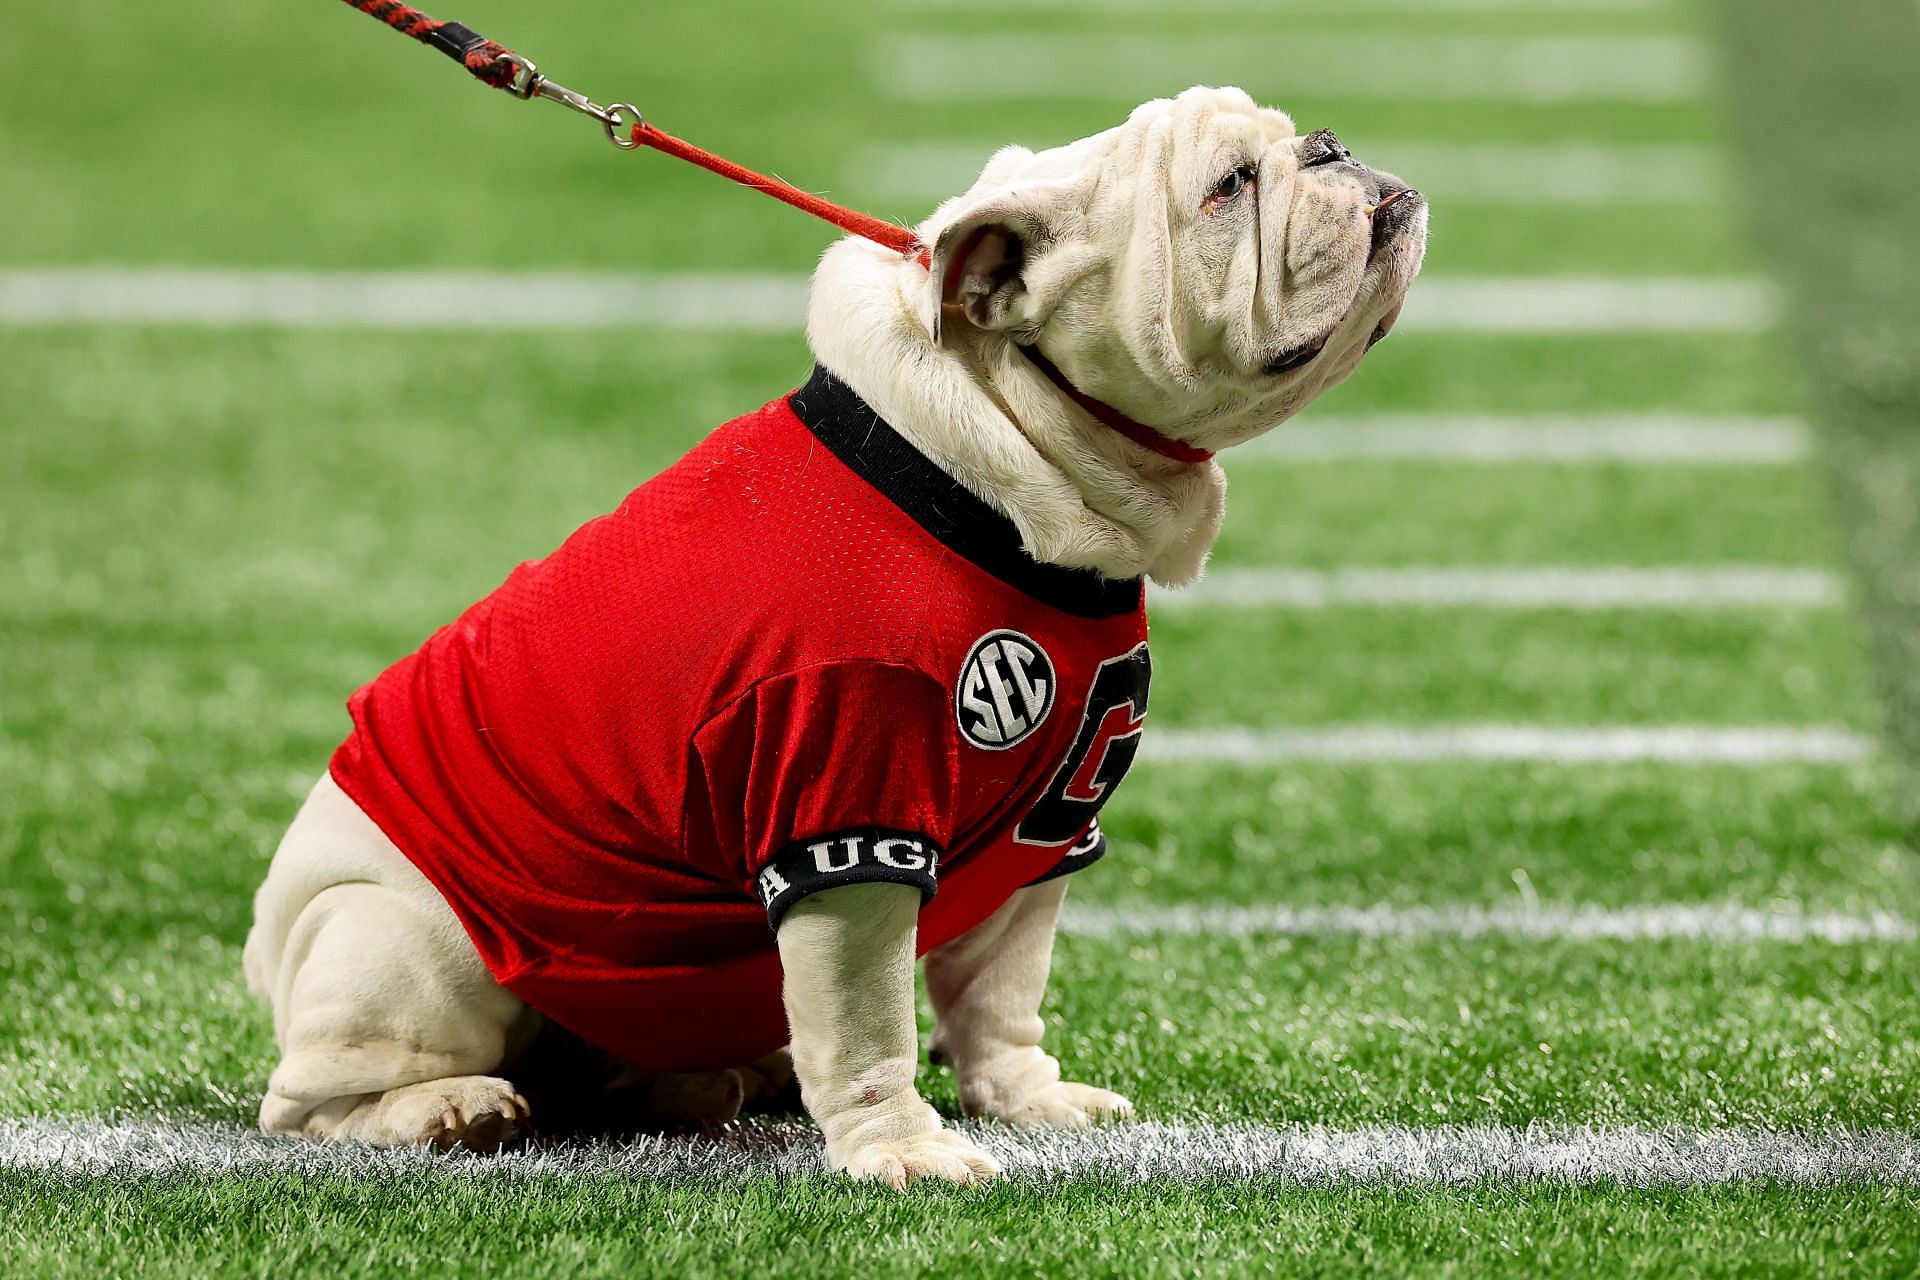 PETA calls out Georgia for 'outdated' use of live bulldog mascot UGA